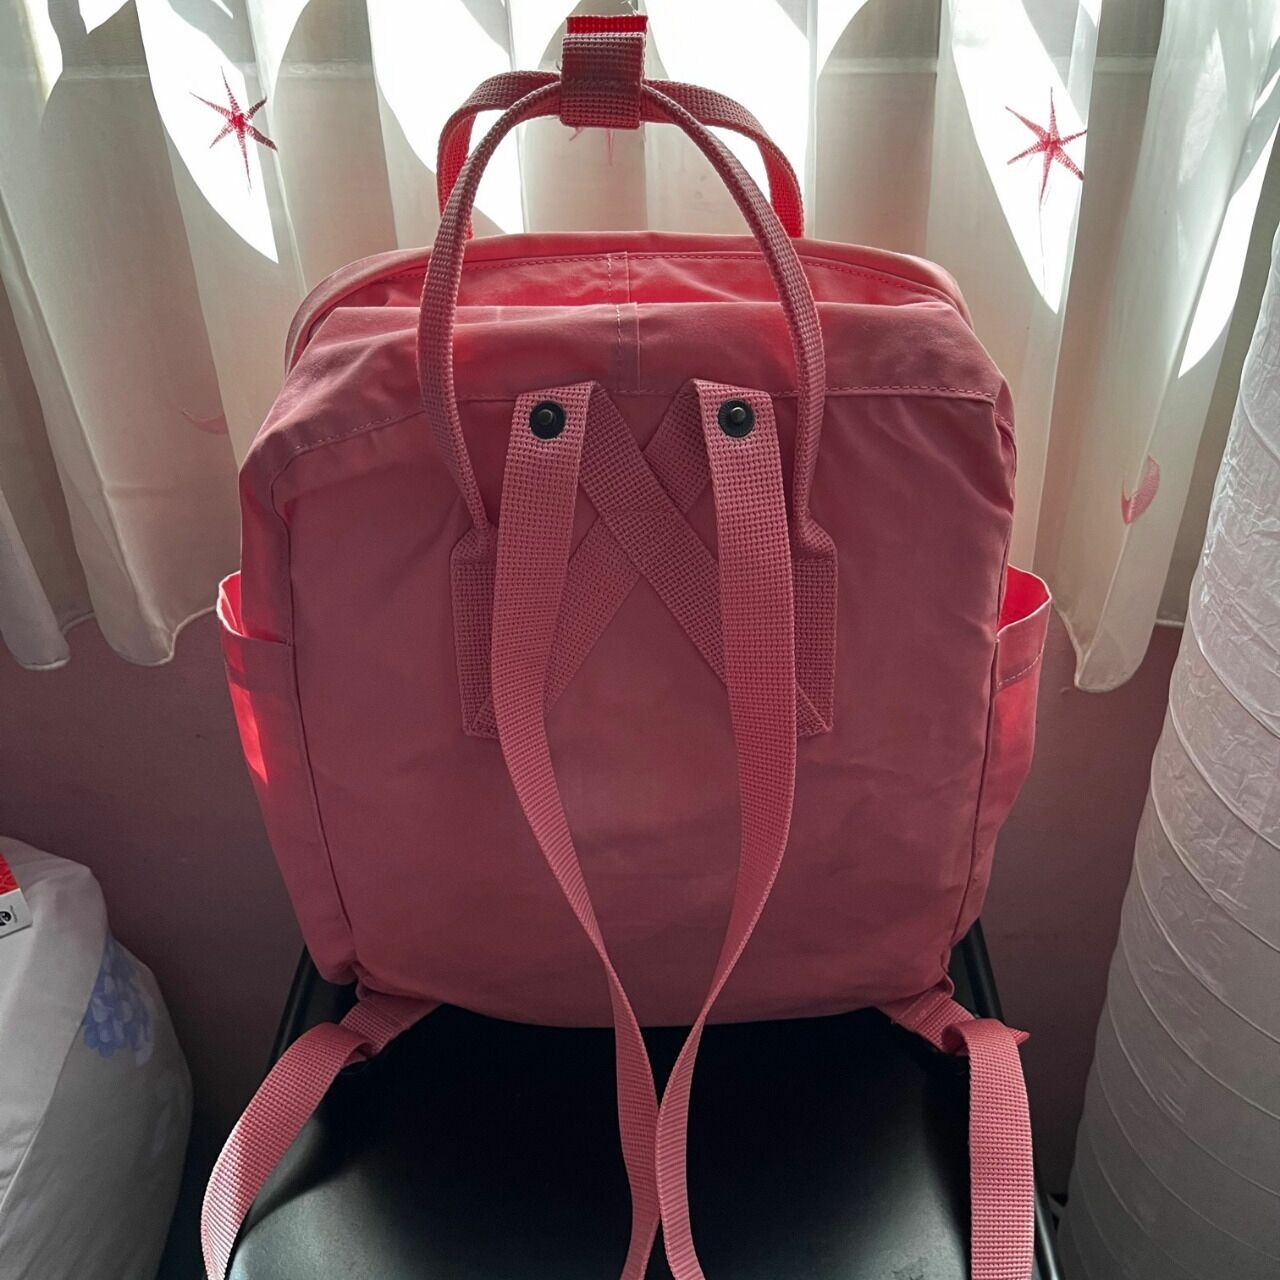 Fjallraven Kanken Pink Backpack